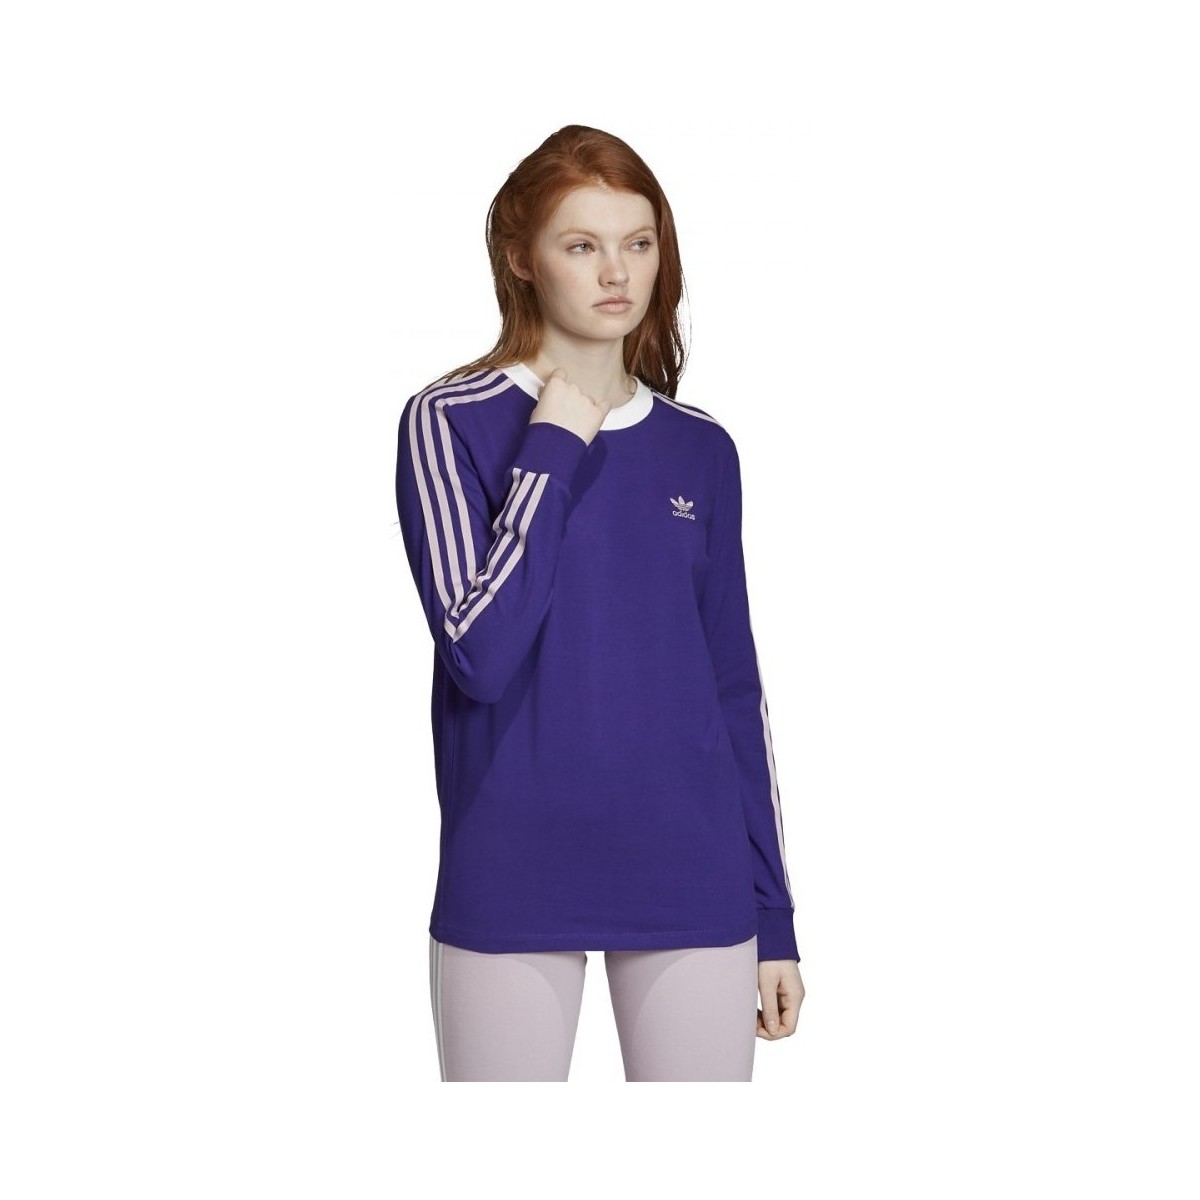 Textil Mulher T-shirts e Pólos adidas Originals 3 Str Ls Tee Violeta